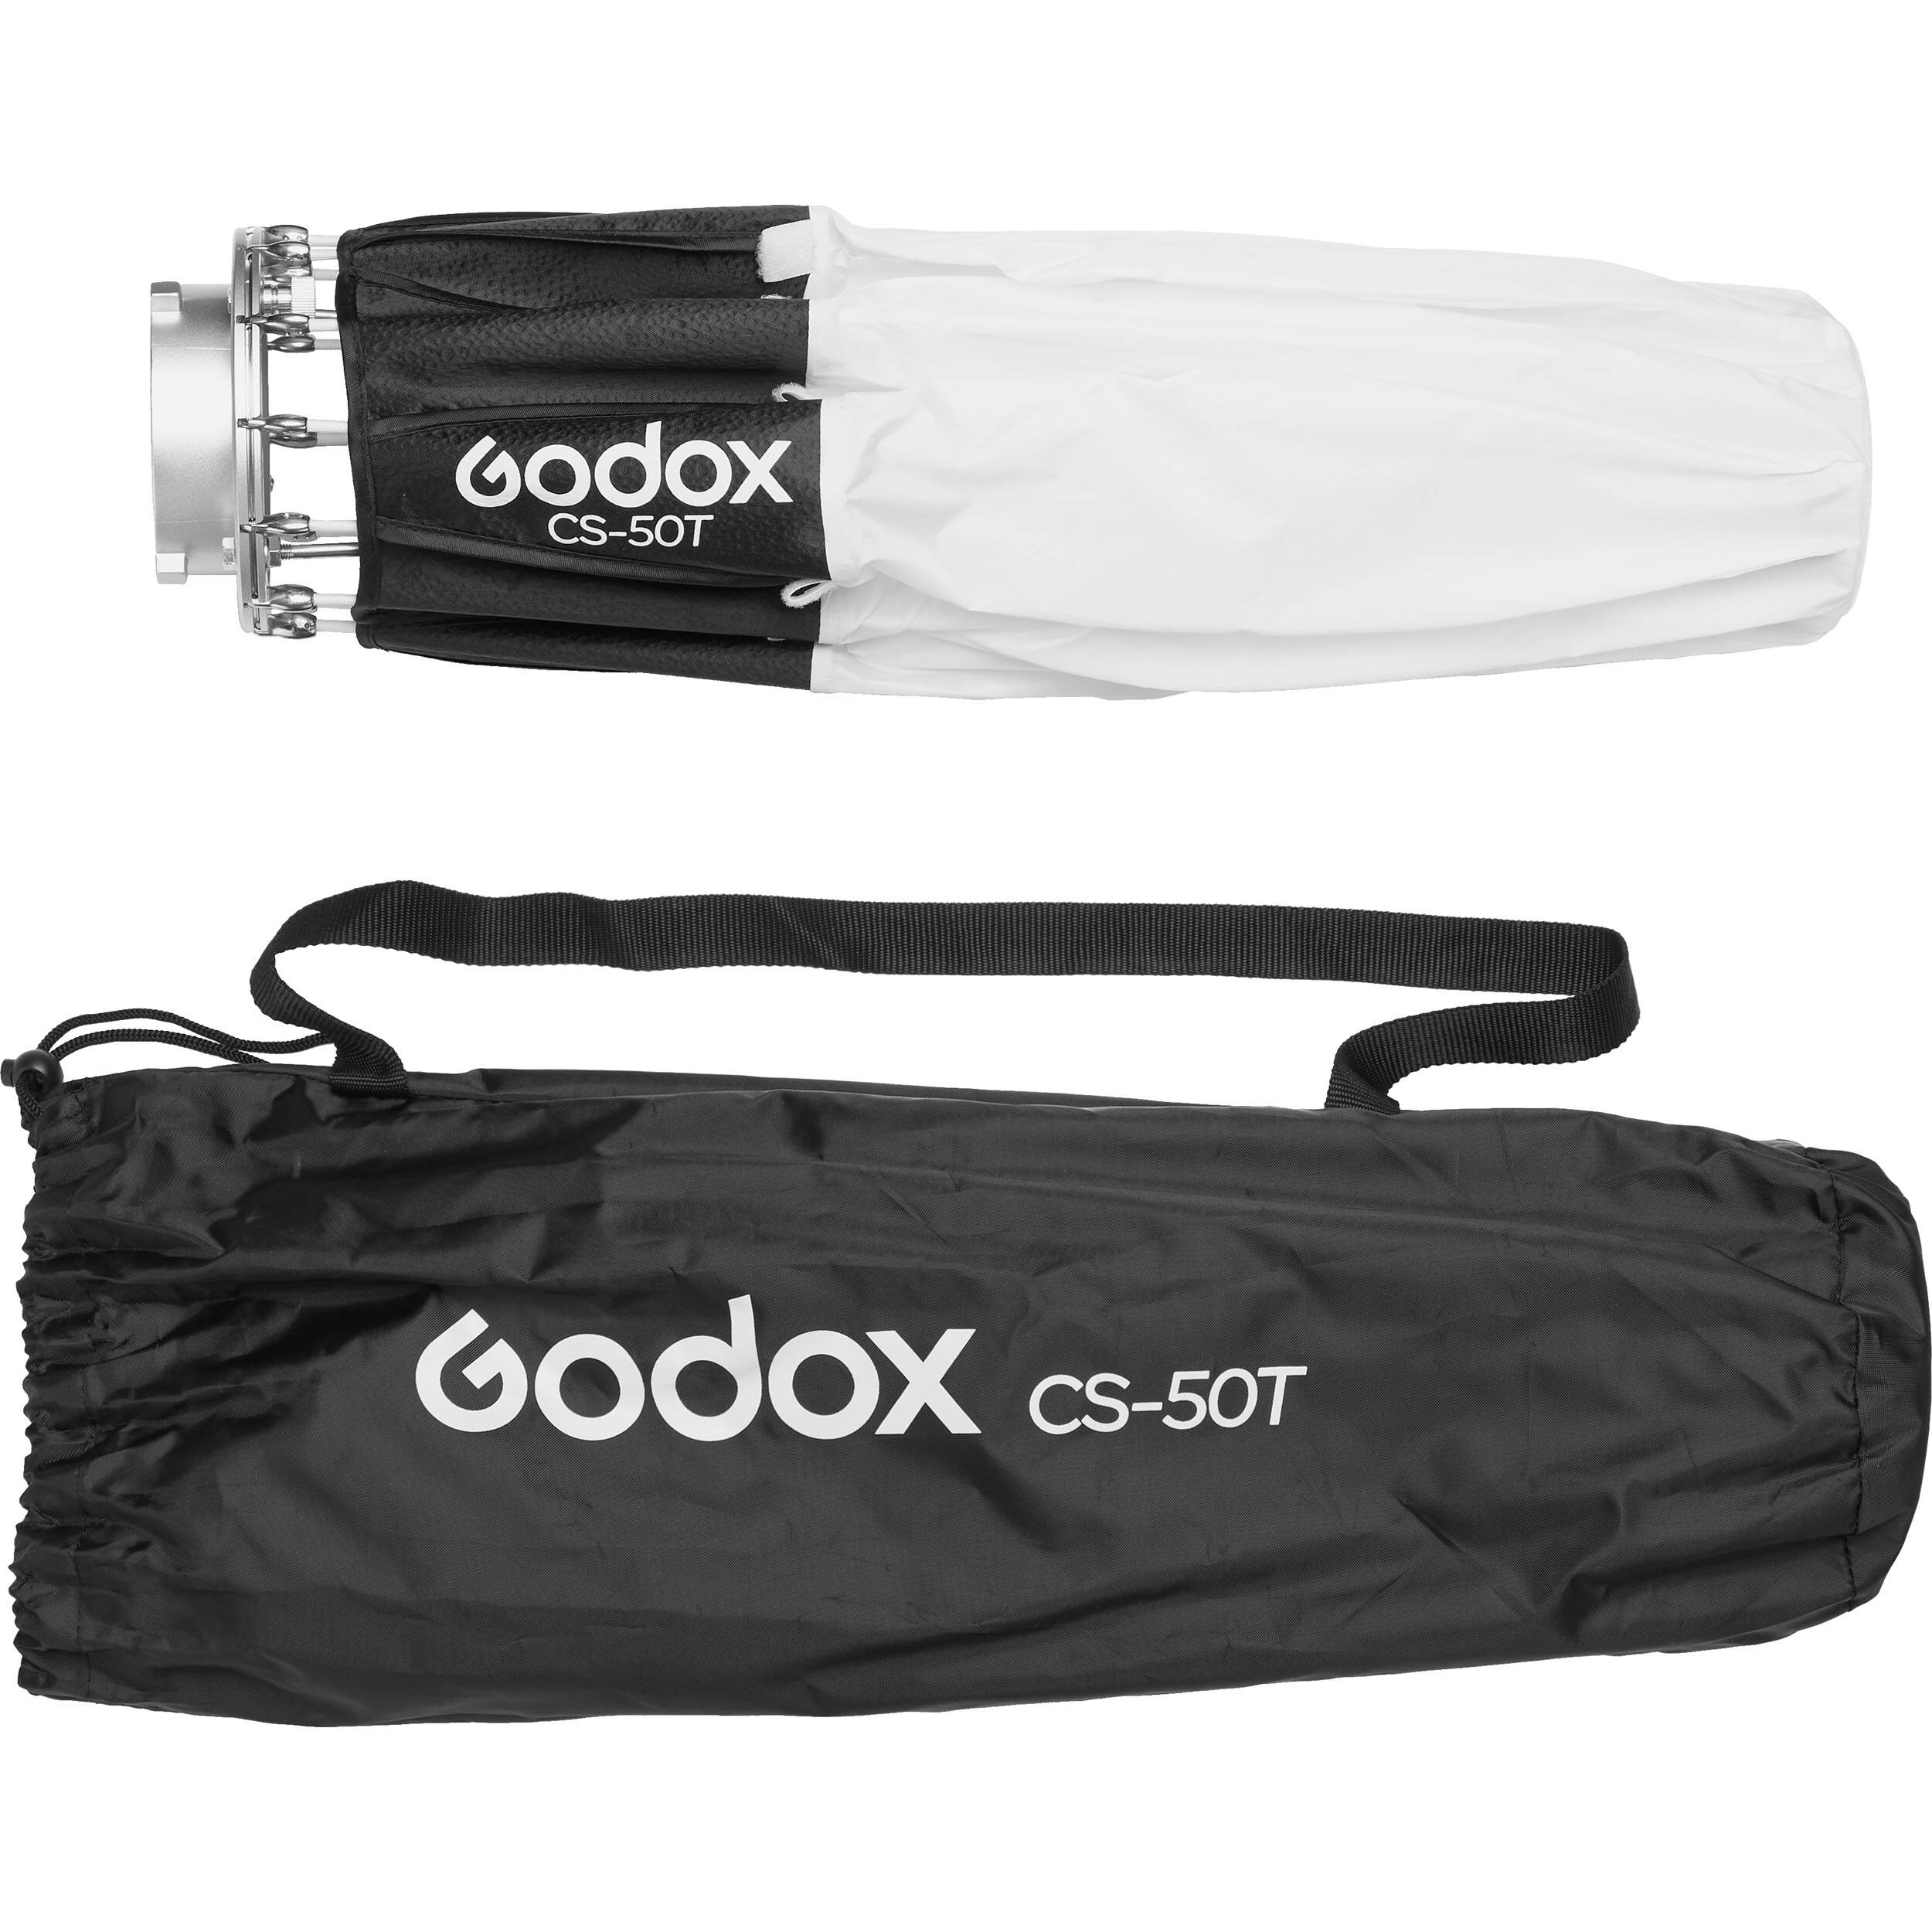    Godox CS-50T   Ultra-mart